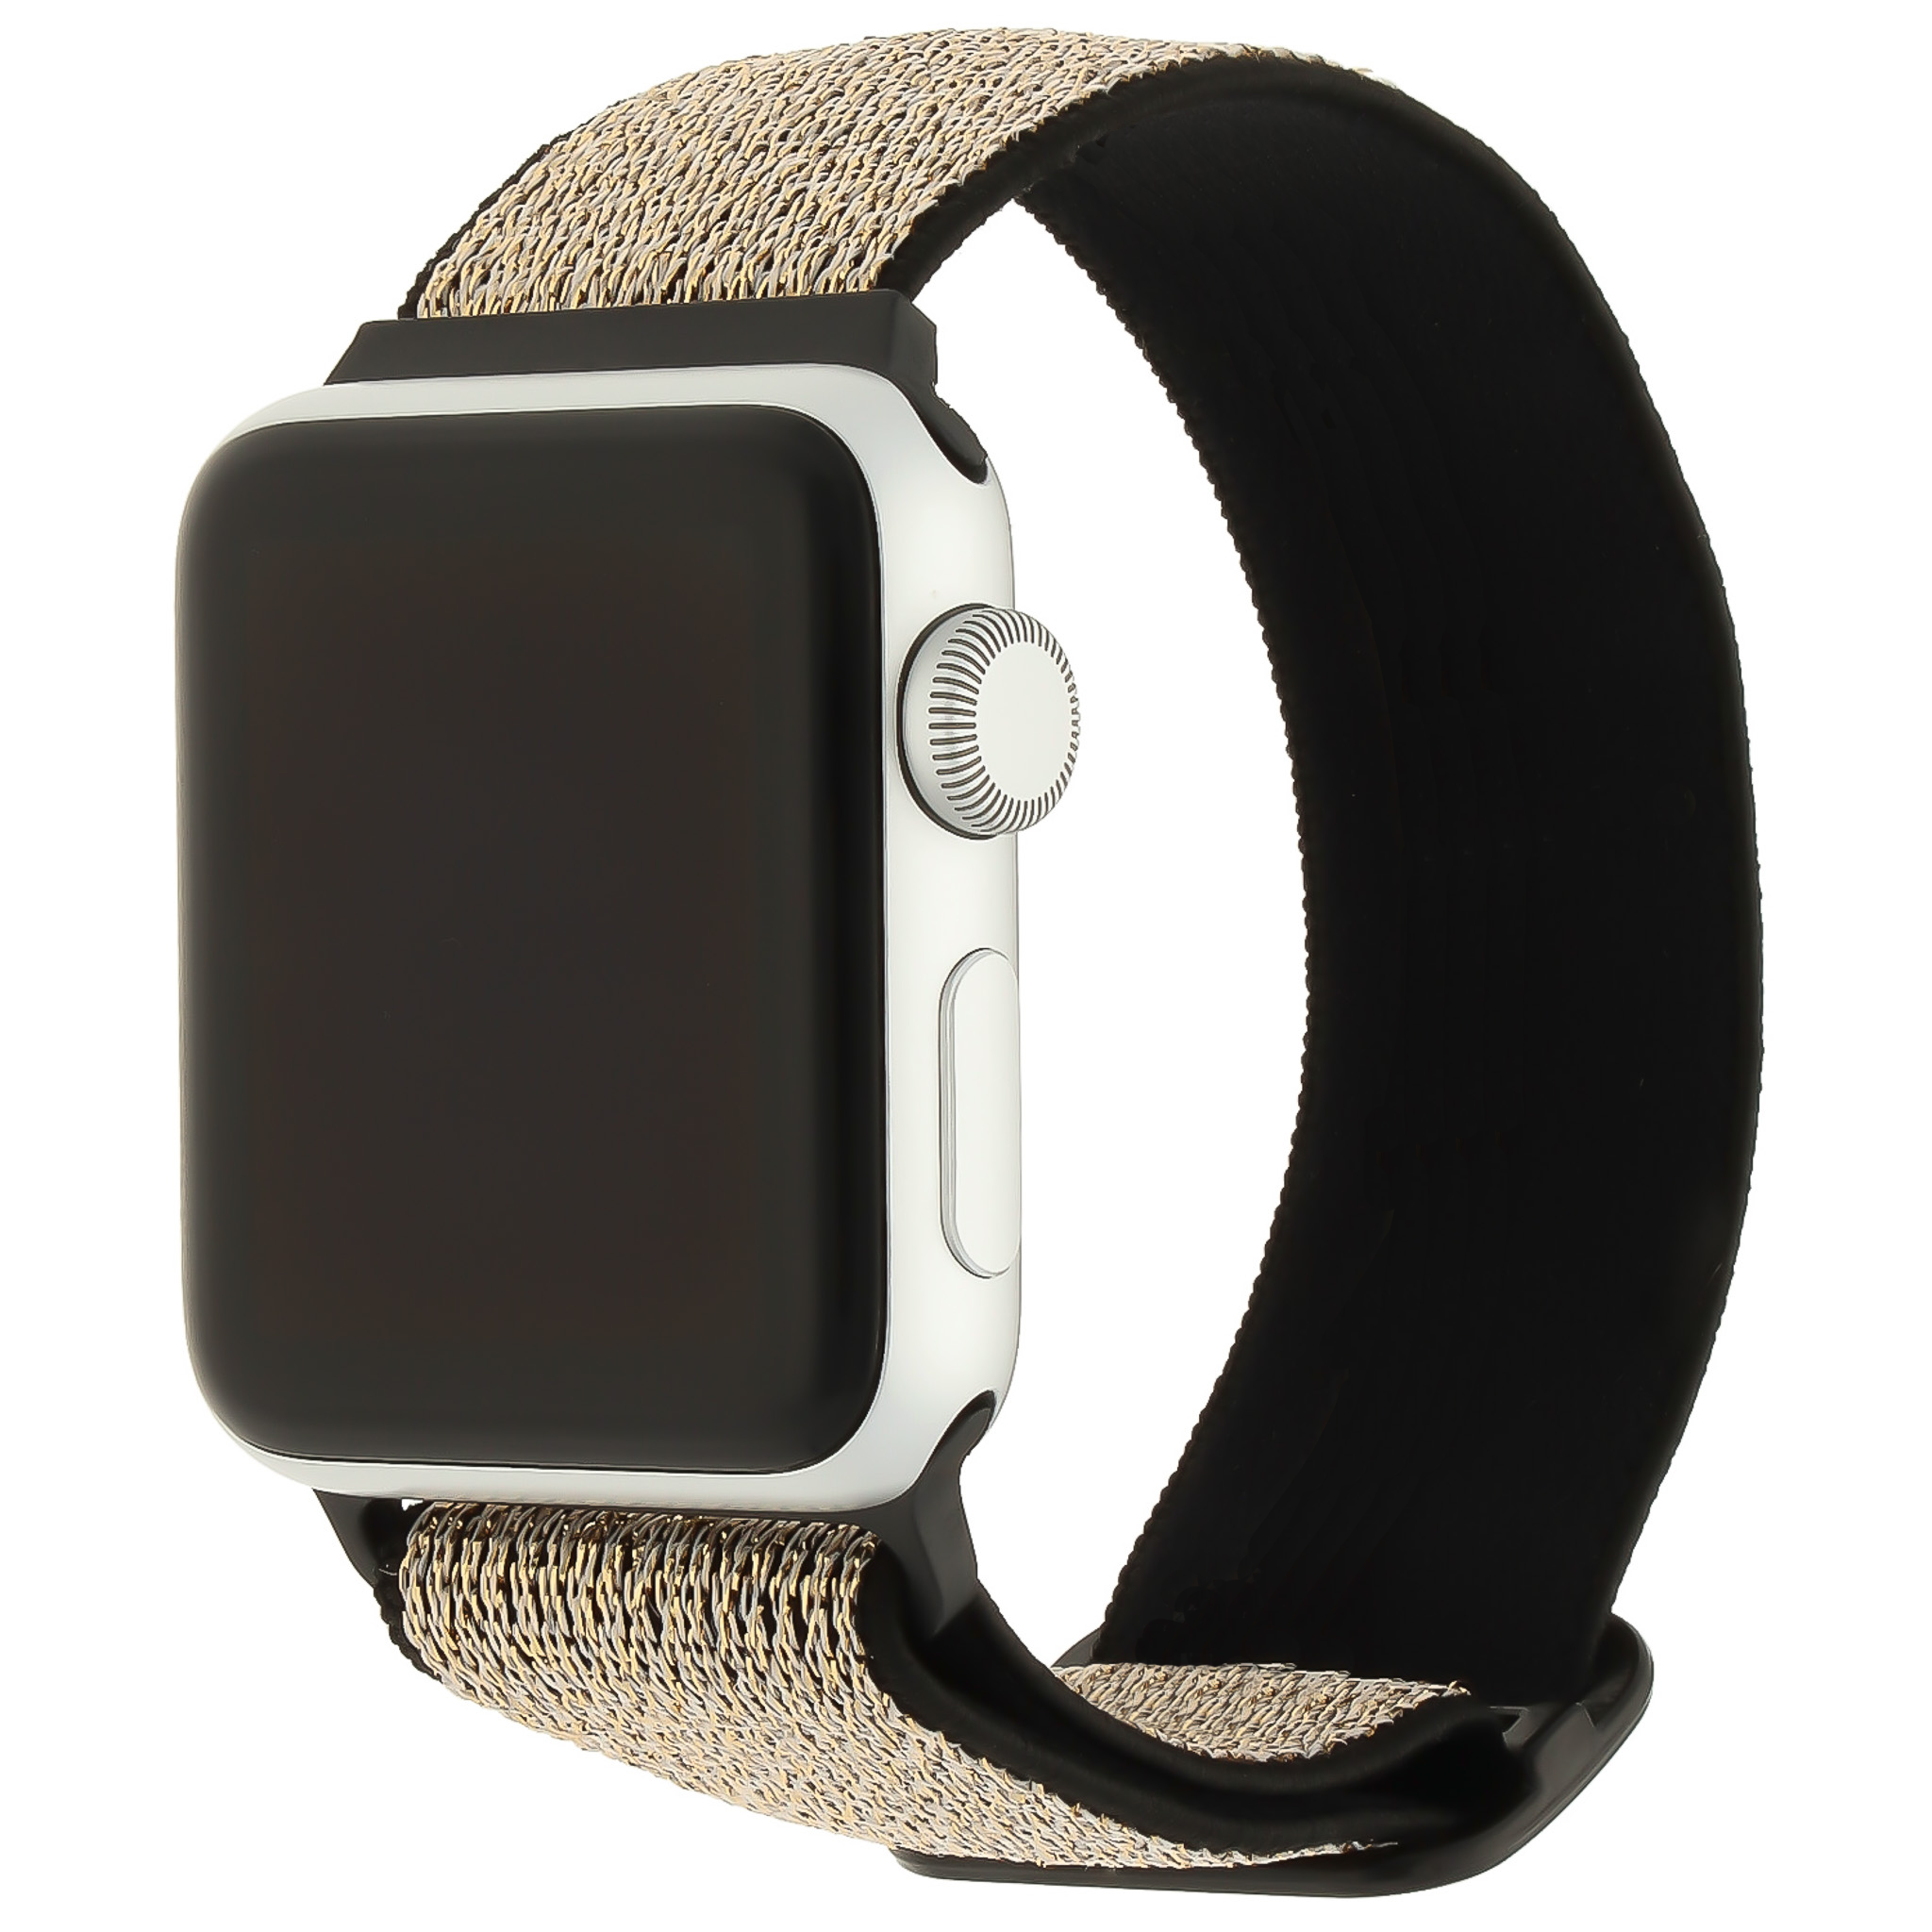 Cinturino solista in nylon per Apple Watch - oro nero glitterato